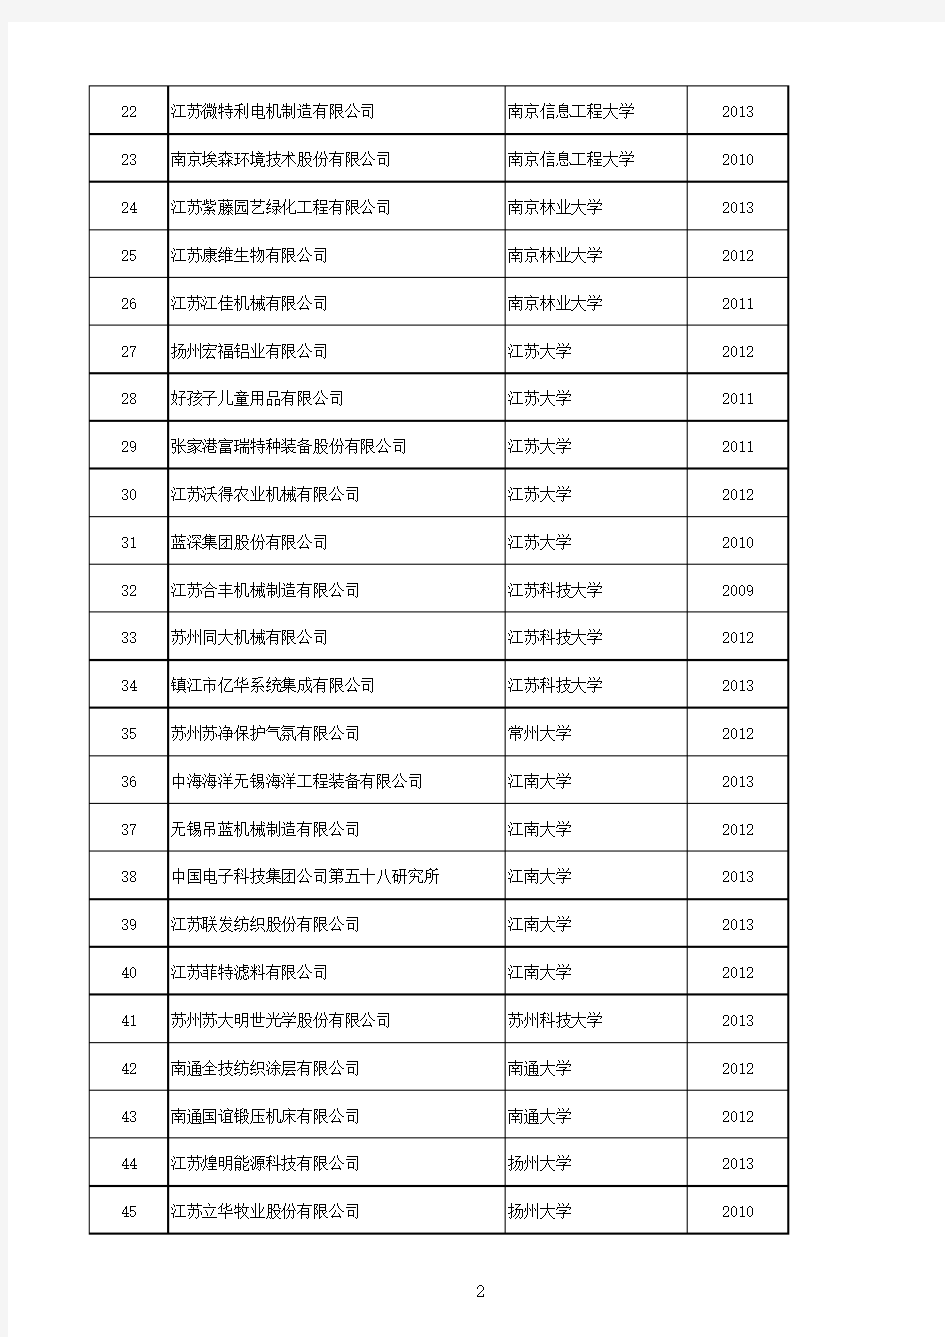 016年度江苏省优秀研究生工作站名单